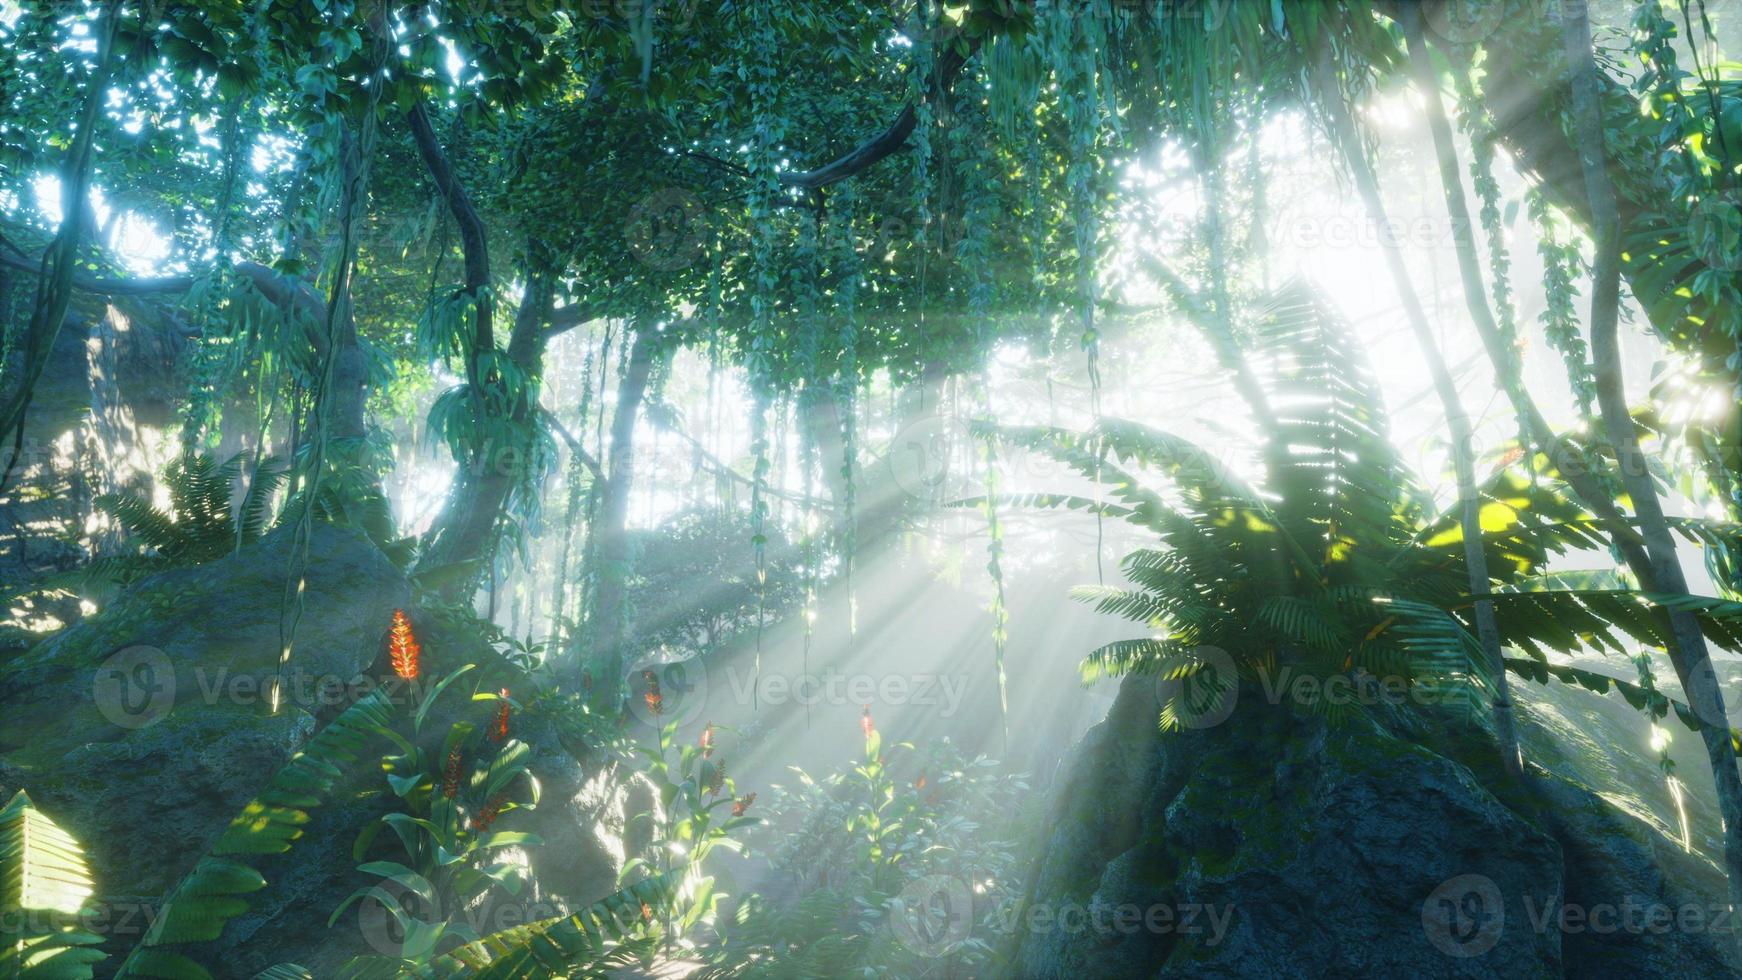 ochtendlicht in prachtige jungletuin foto